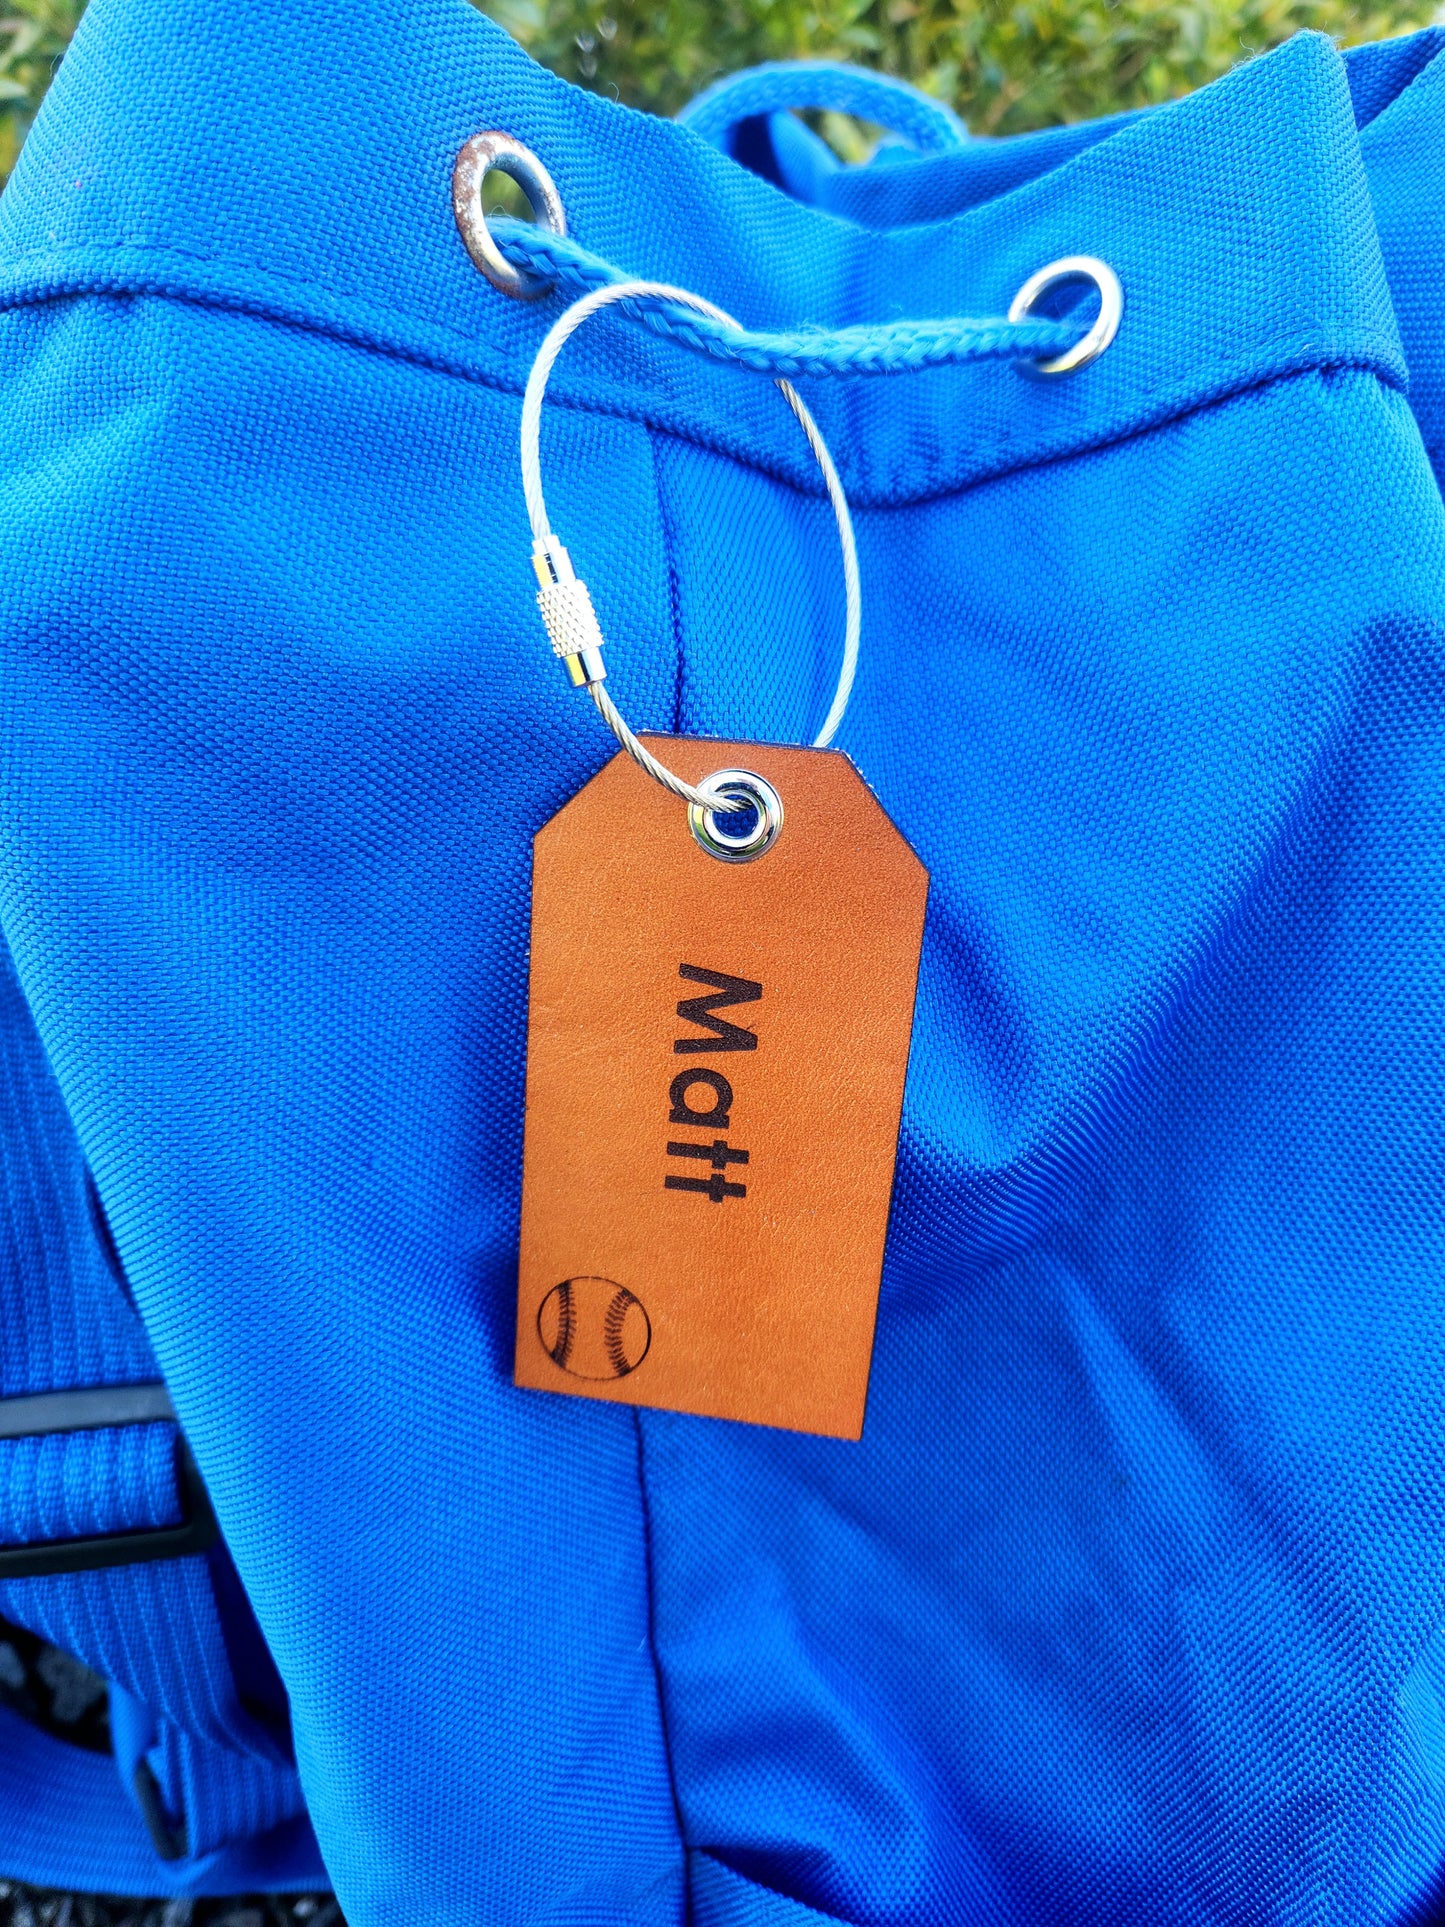 Leather bag ID tags for Gym bag/Backpacks